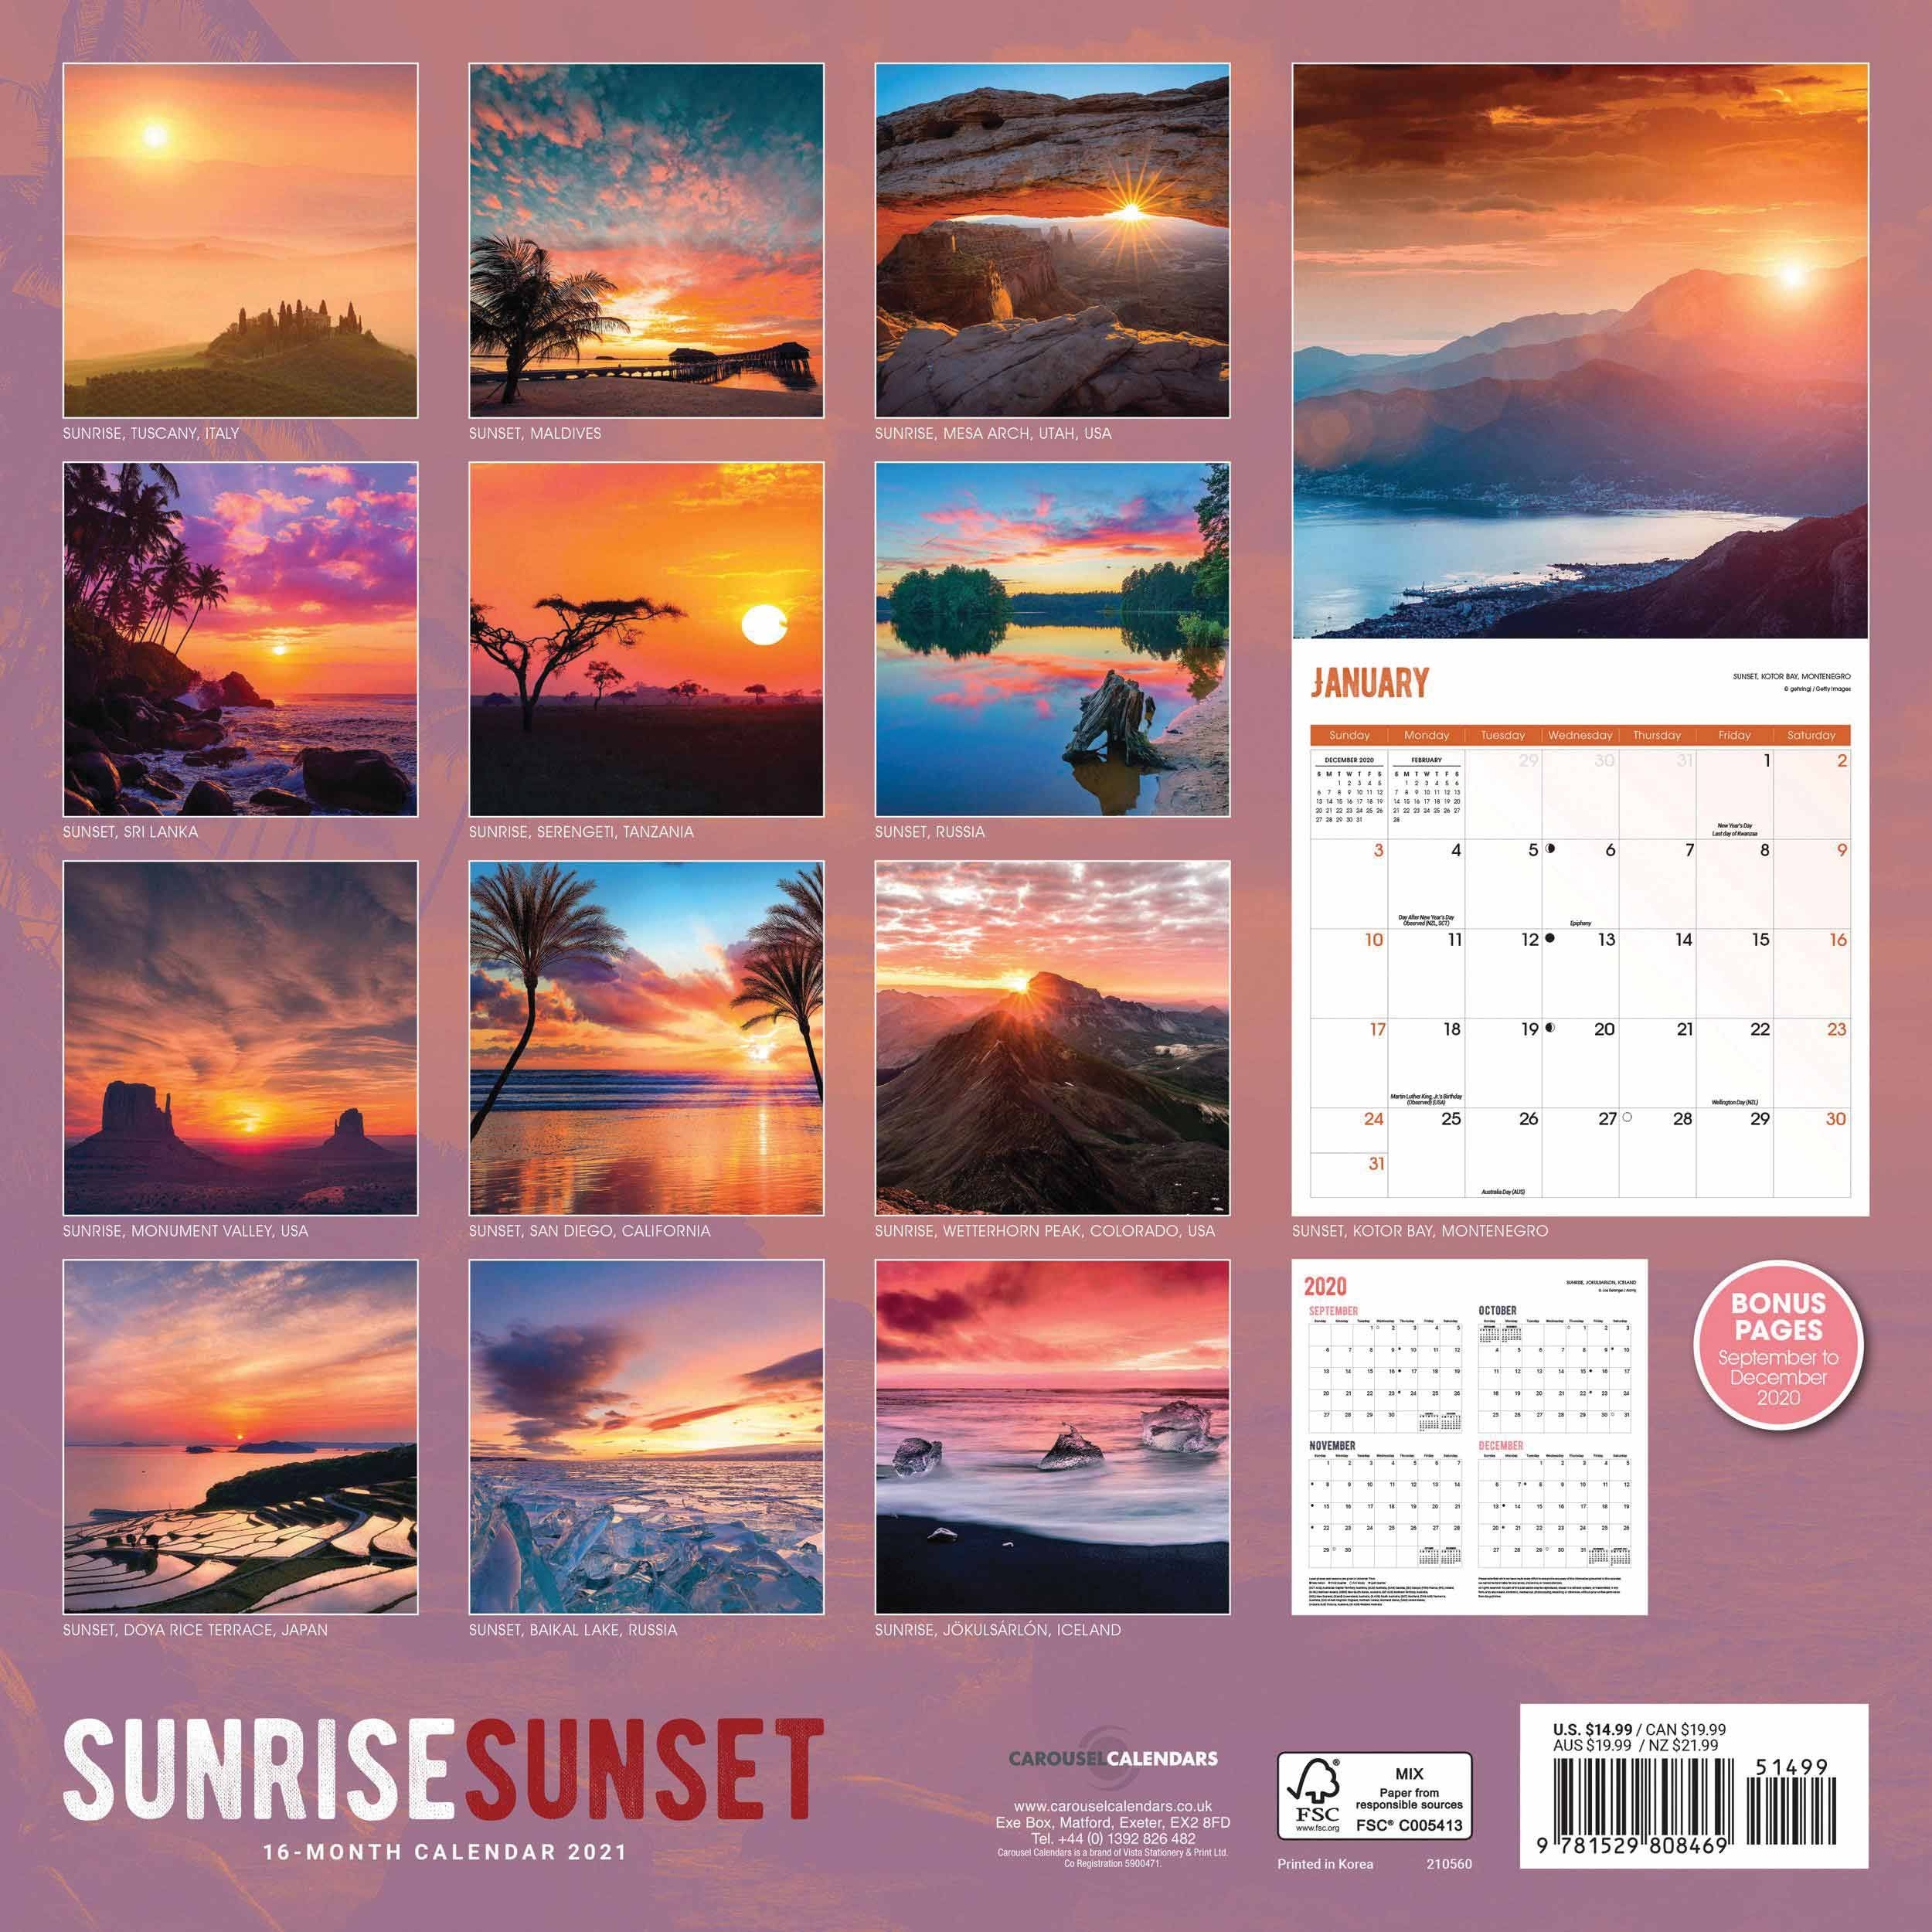 Sunrise Sunset Calendar 2021 At Calendar Club